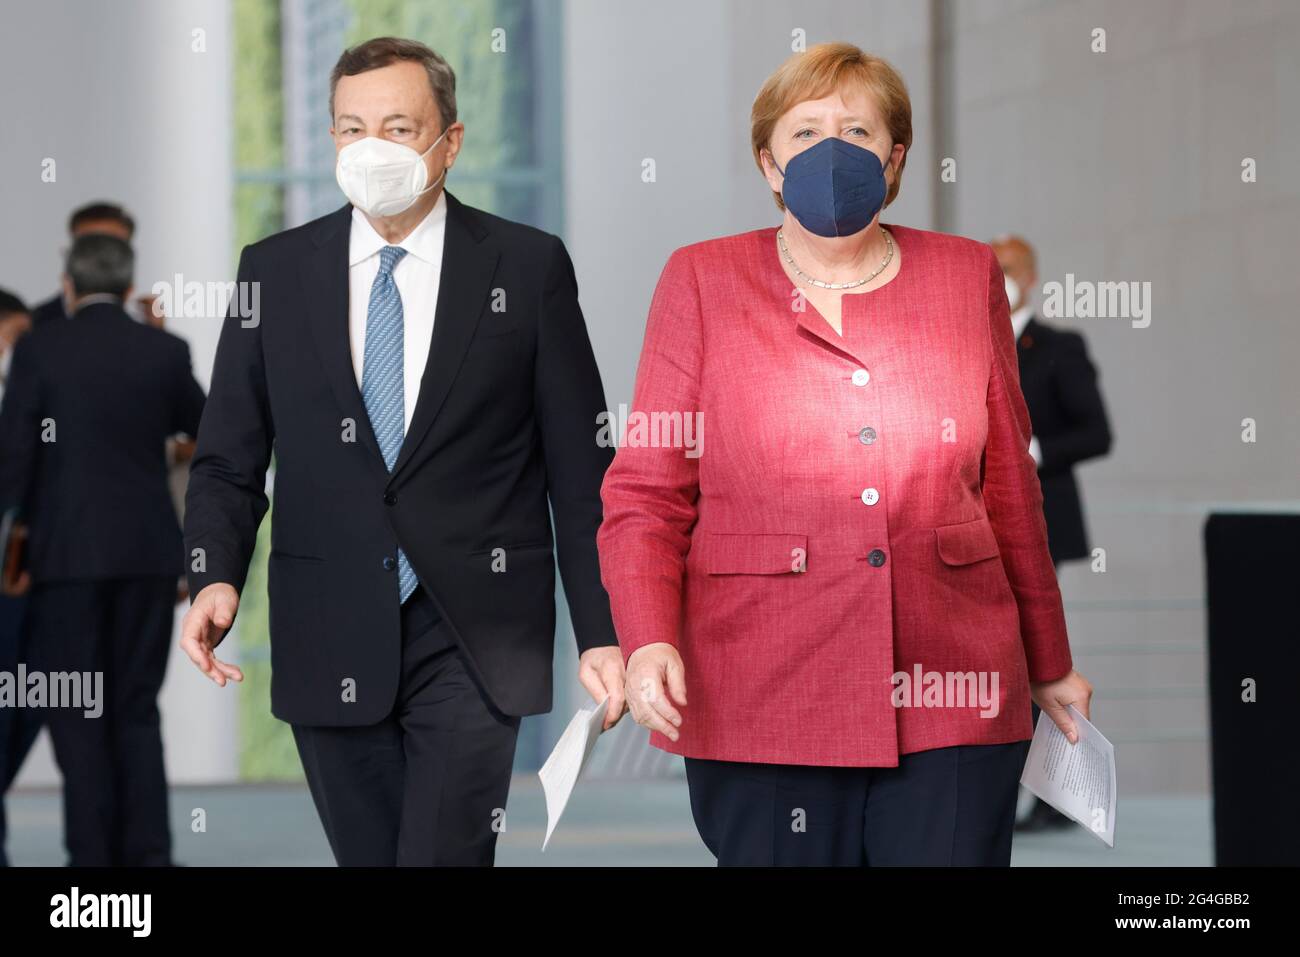 Berlin, Allemagne. 21 juin 2021. La chancelière allemande Angela Merkel (R, CDU) et Mario Draghi, Premier ministre italien, arrivent pour leur conférence de presse à la Chancellerie fédérale. Draghi est à Berlin pour sa visite inaugurale. Crédit : ODD Andersen/AFP-Pool/dpa/Alay Live News Banque D'Images